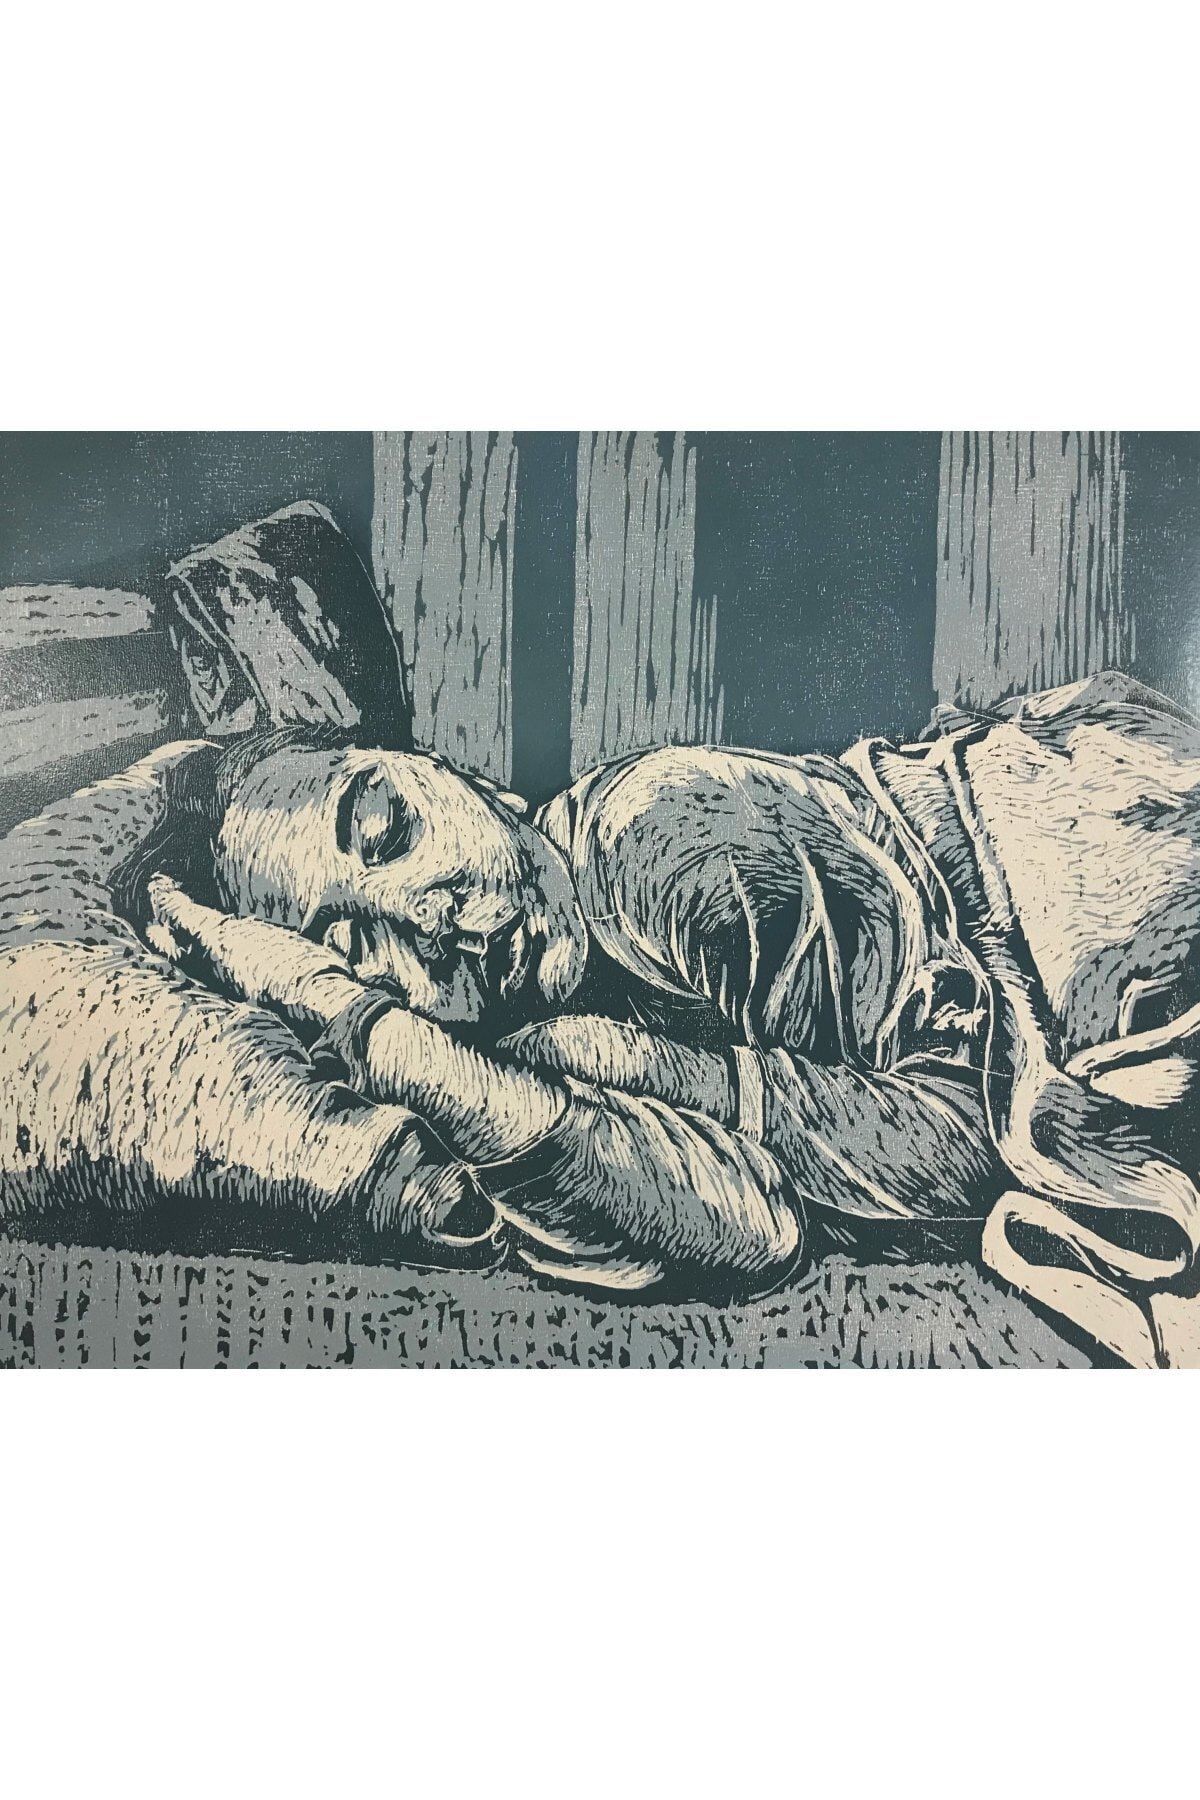 Elif Beyaz Uyku Serisi-5, 80x60, Ağaç Baskı